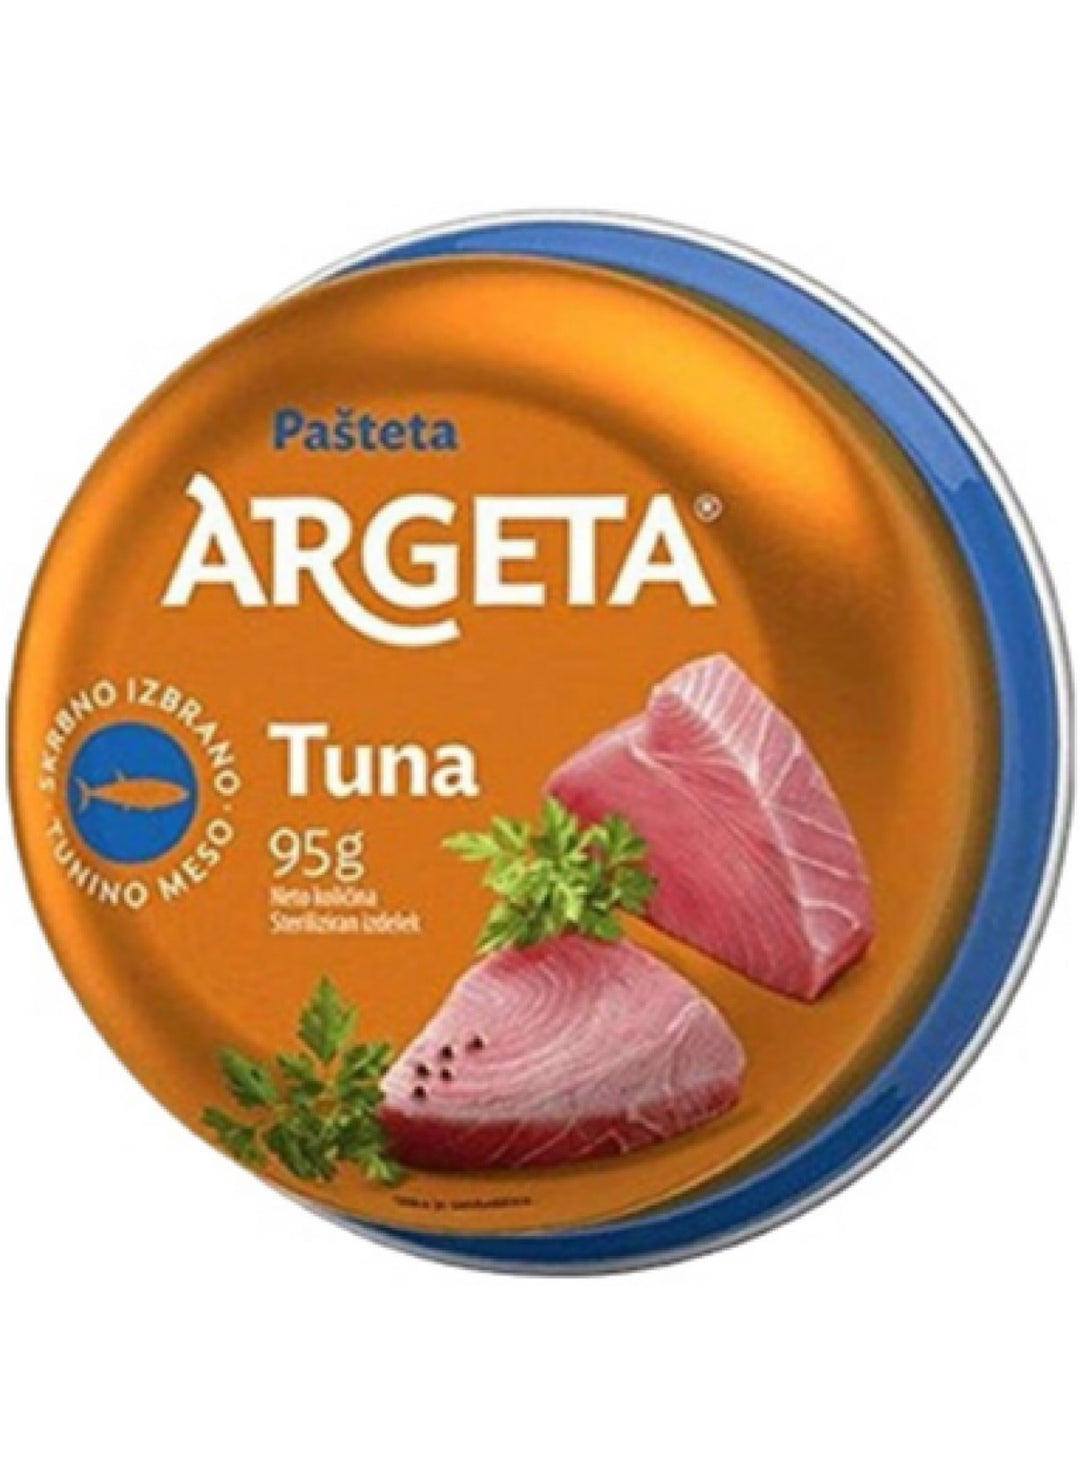 Tuna Pate- Argeta - 95g